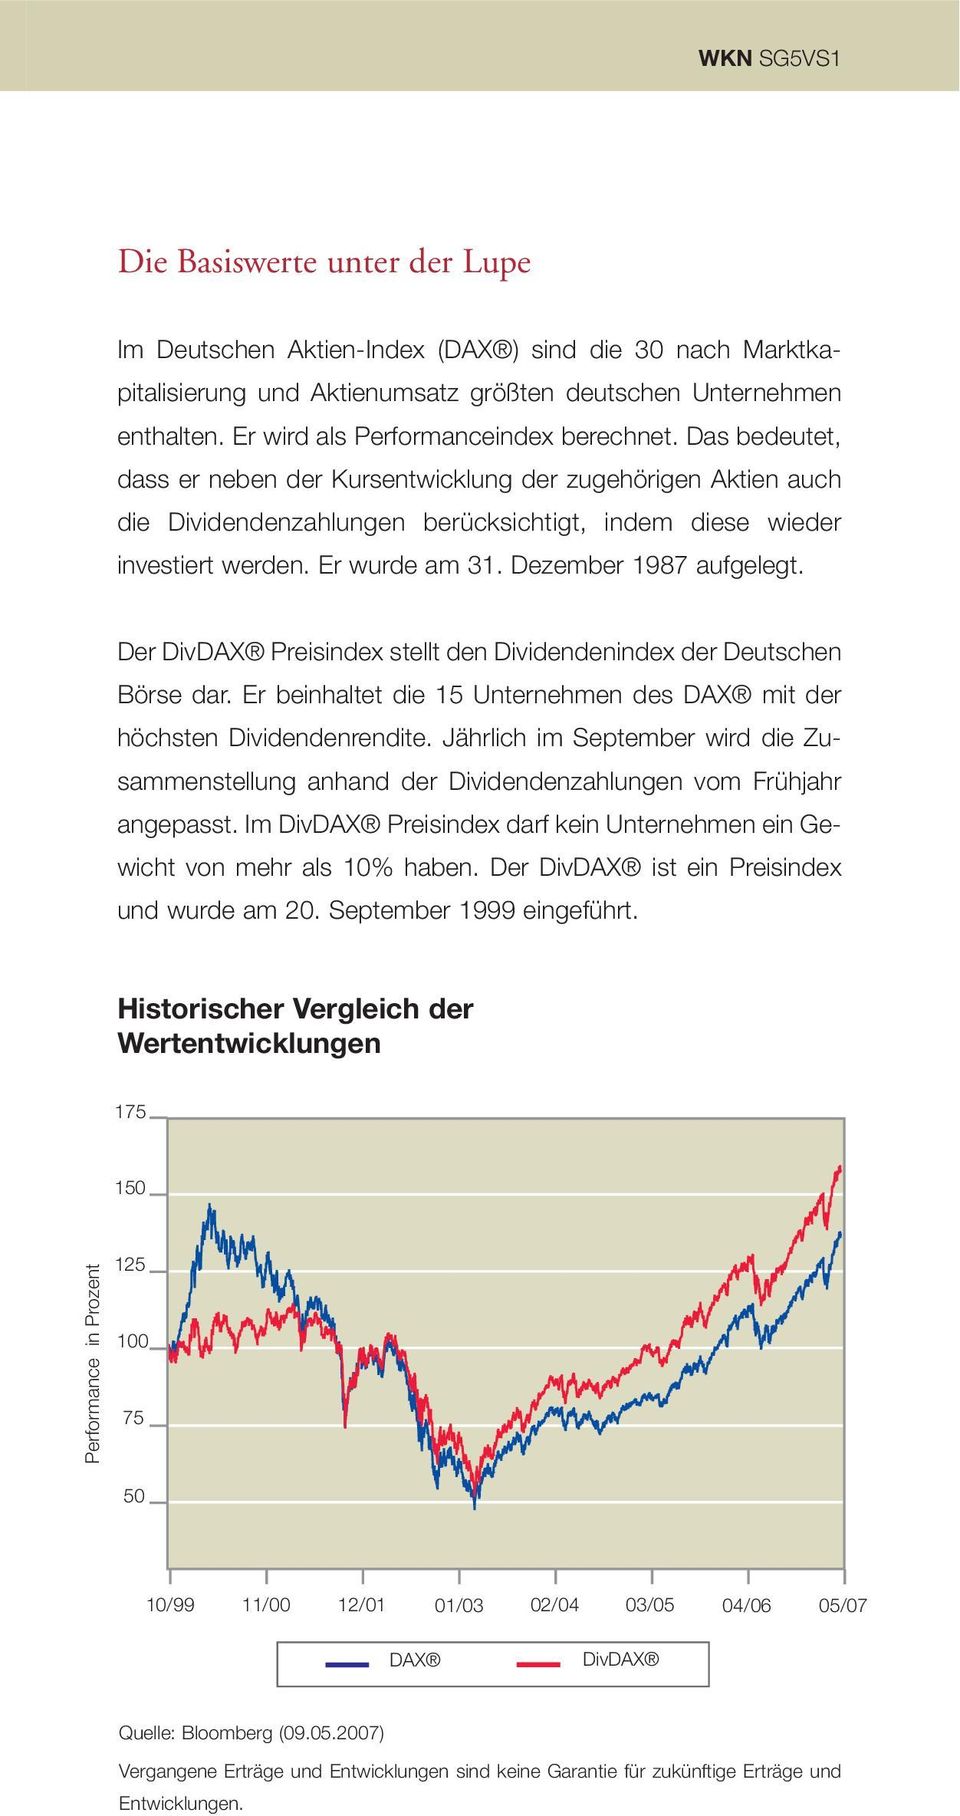 Er wurde am 31. Dezember 1987 aufgelegt. Der DivDAX Preisindex stellt den Dividendenindex der Deutschen Börse dar. Er beinhaltet die 15 Unternehmen des DAX mit der höchsten Dividendenrendite.